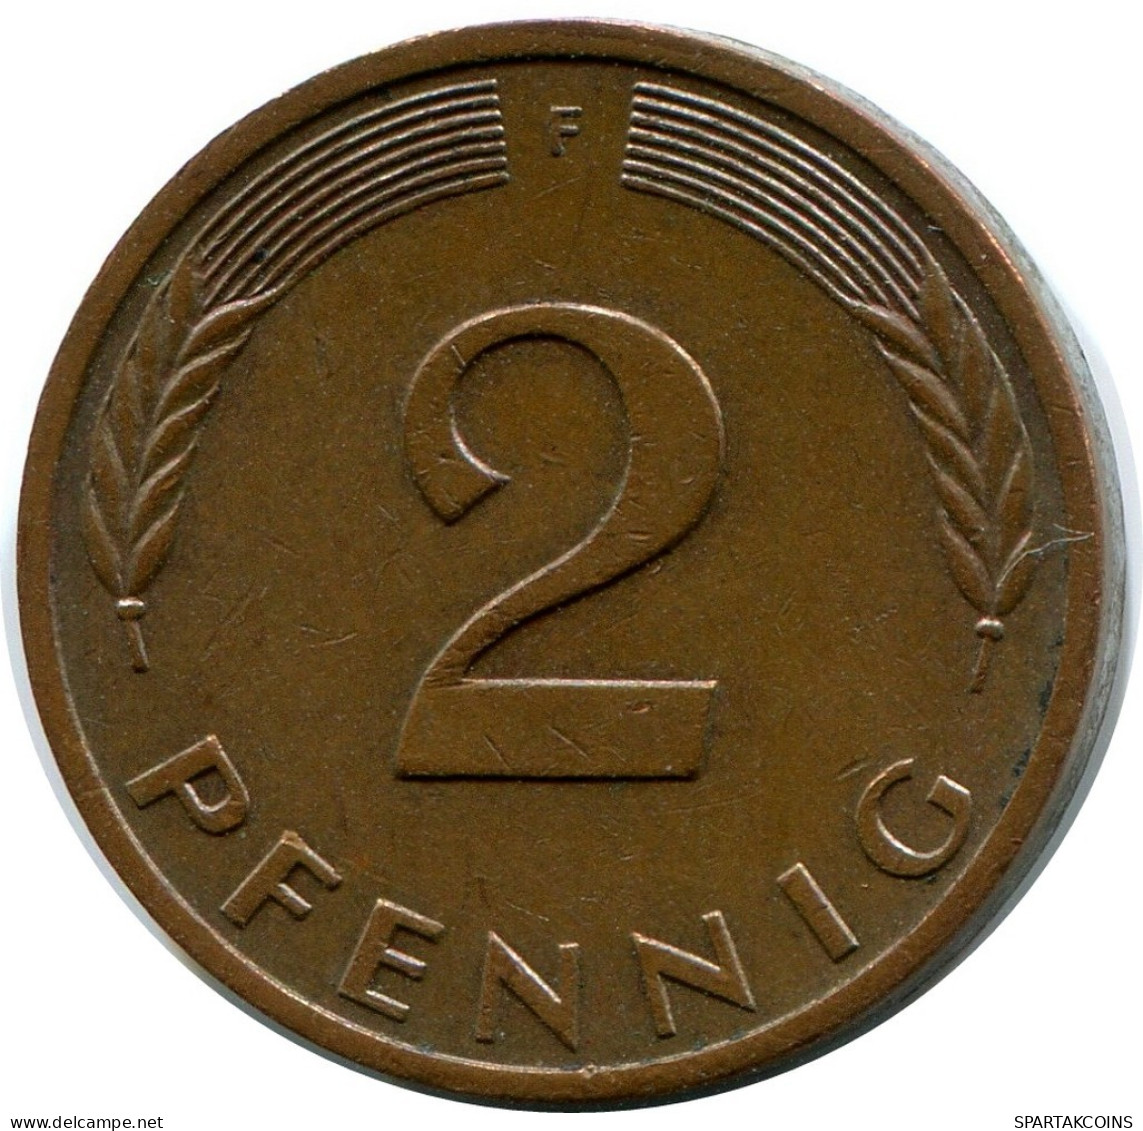 2 PFENNIG 1978 F BRD ALEMANIA Moneda GERMANY #AZ474.E.A - 2 Pfennig